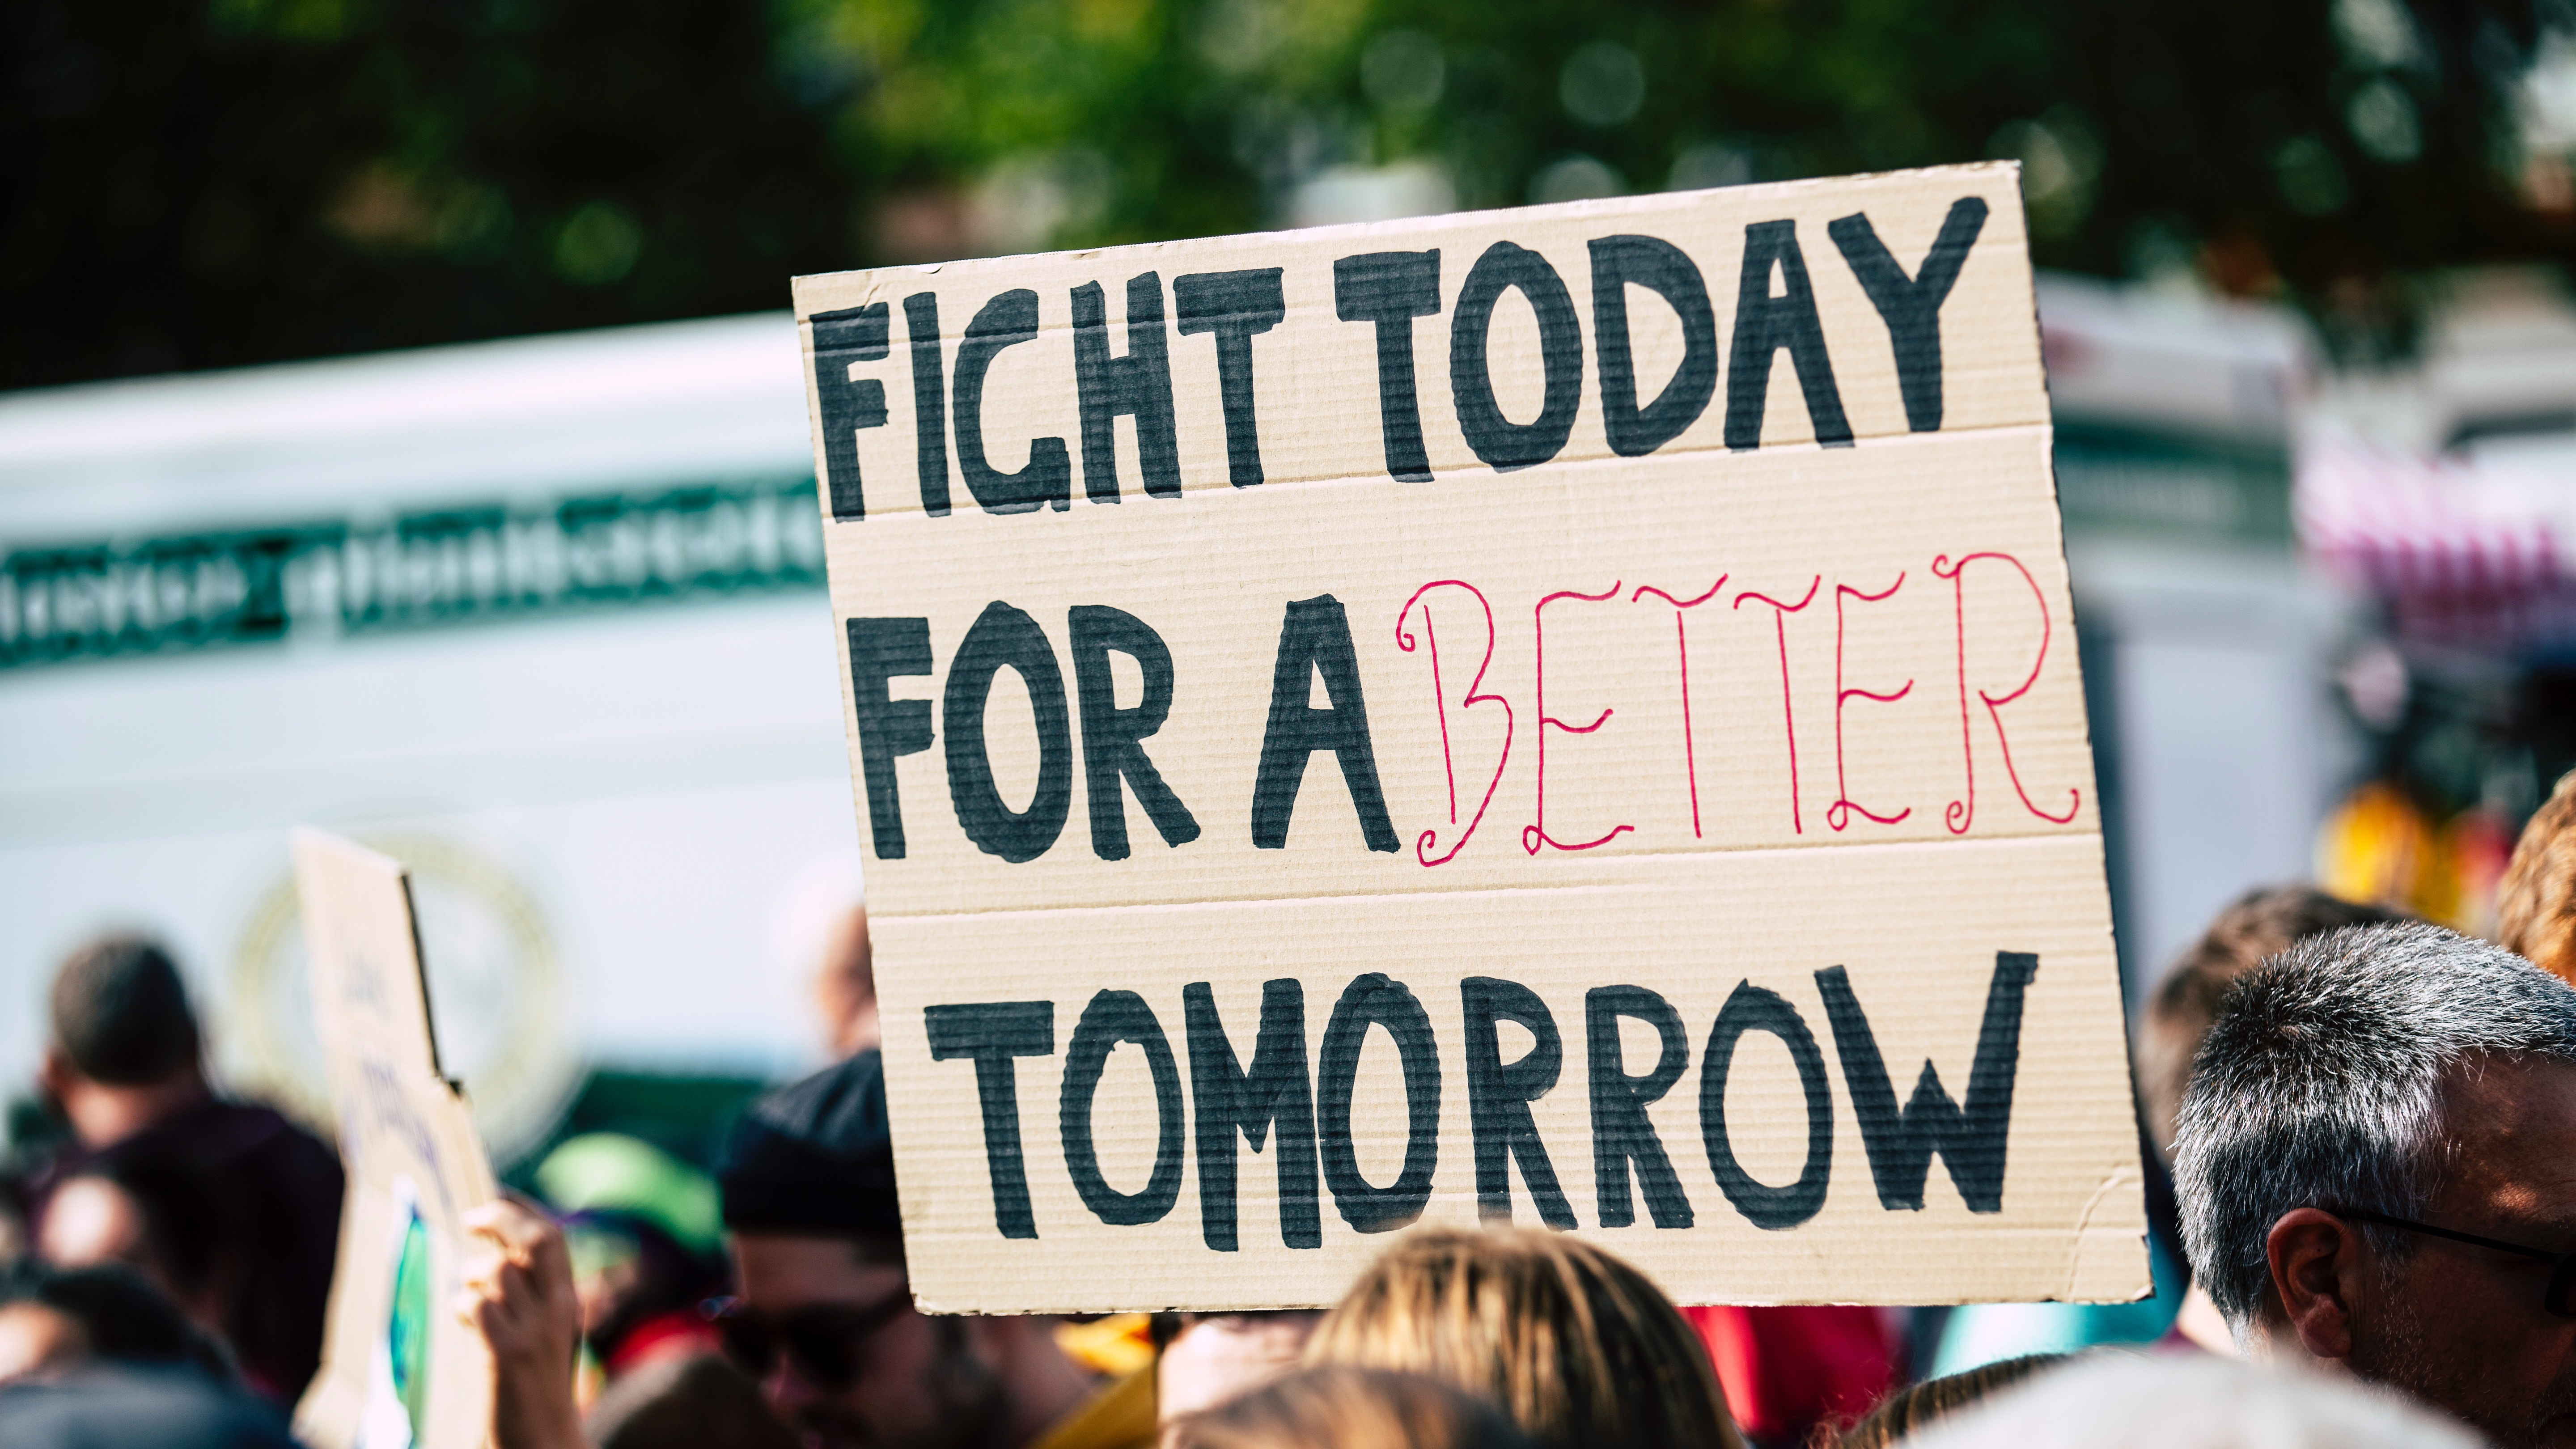 Bild von einer Demonstration. Auf einem Schild steht "Fight today for a better tomorrow"